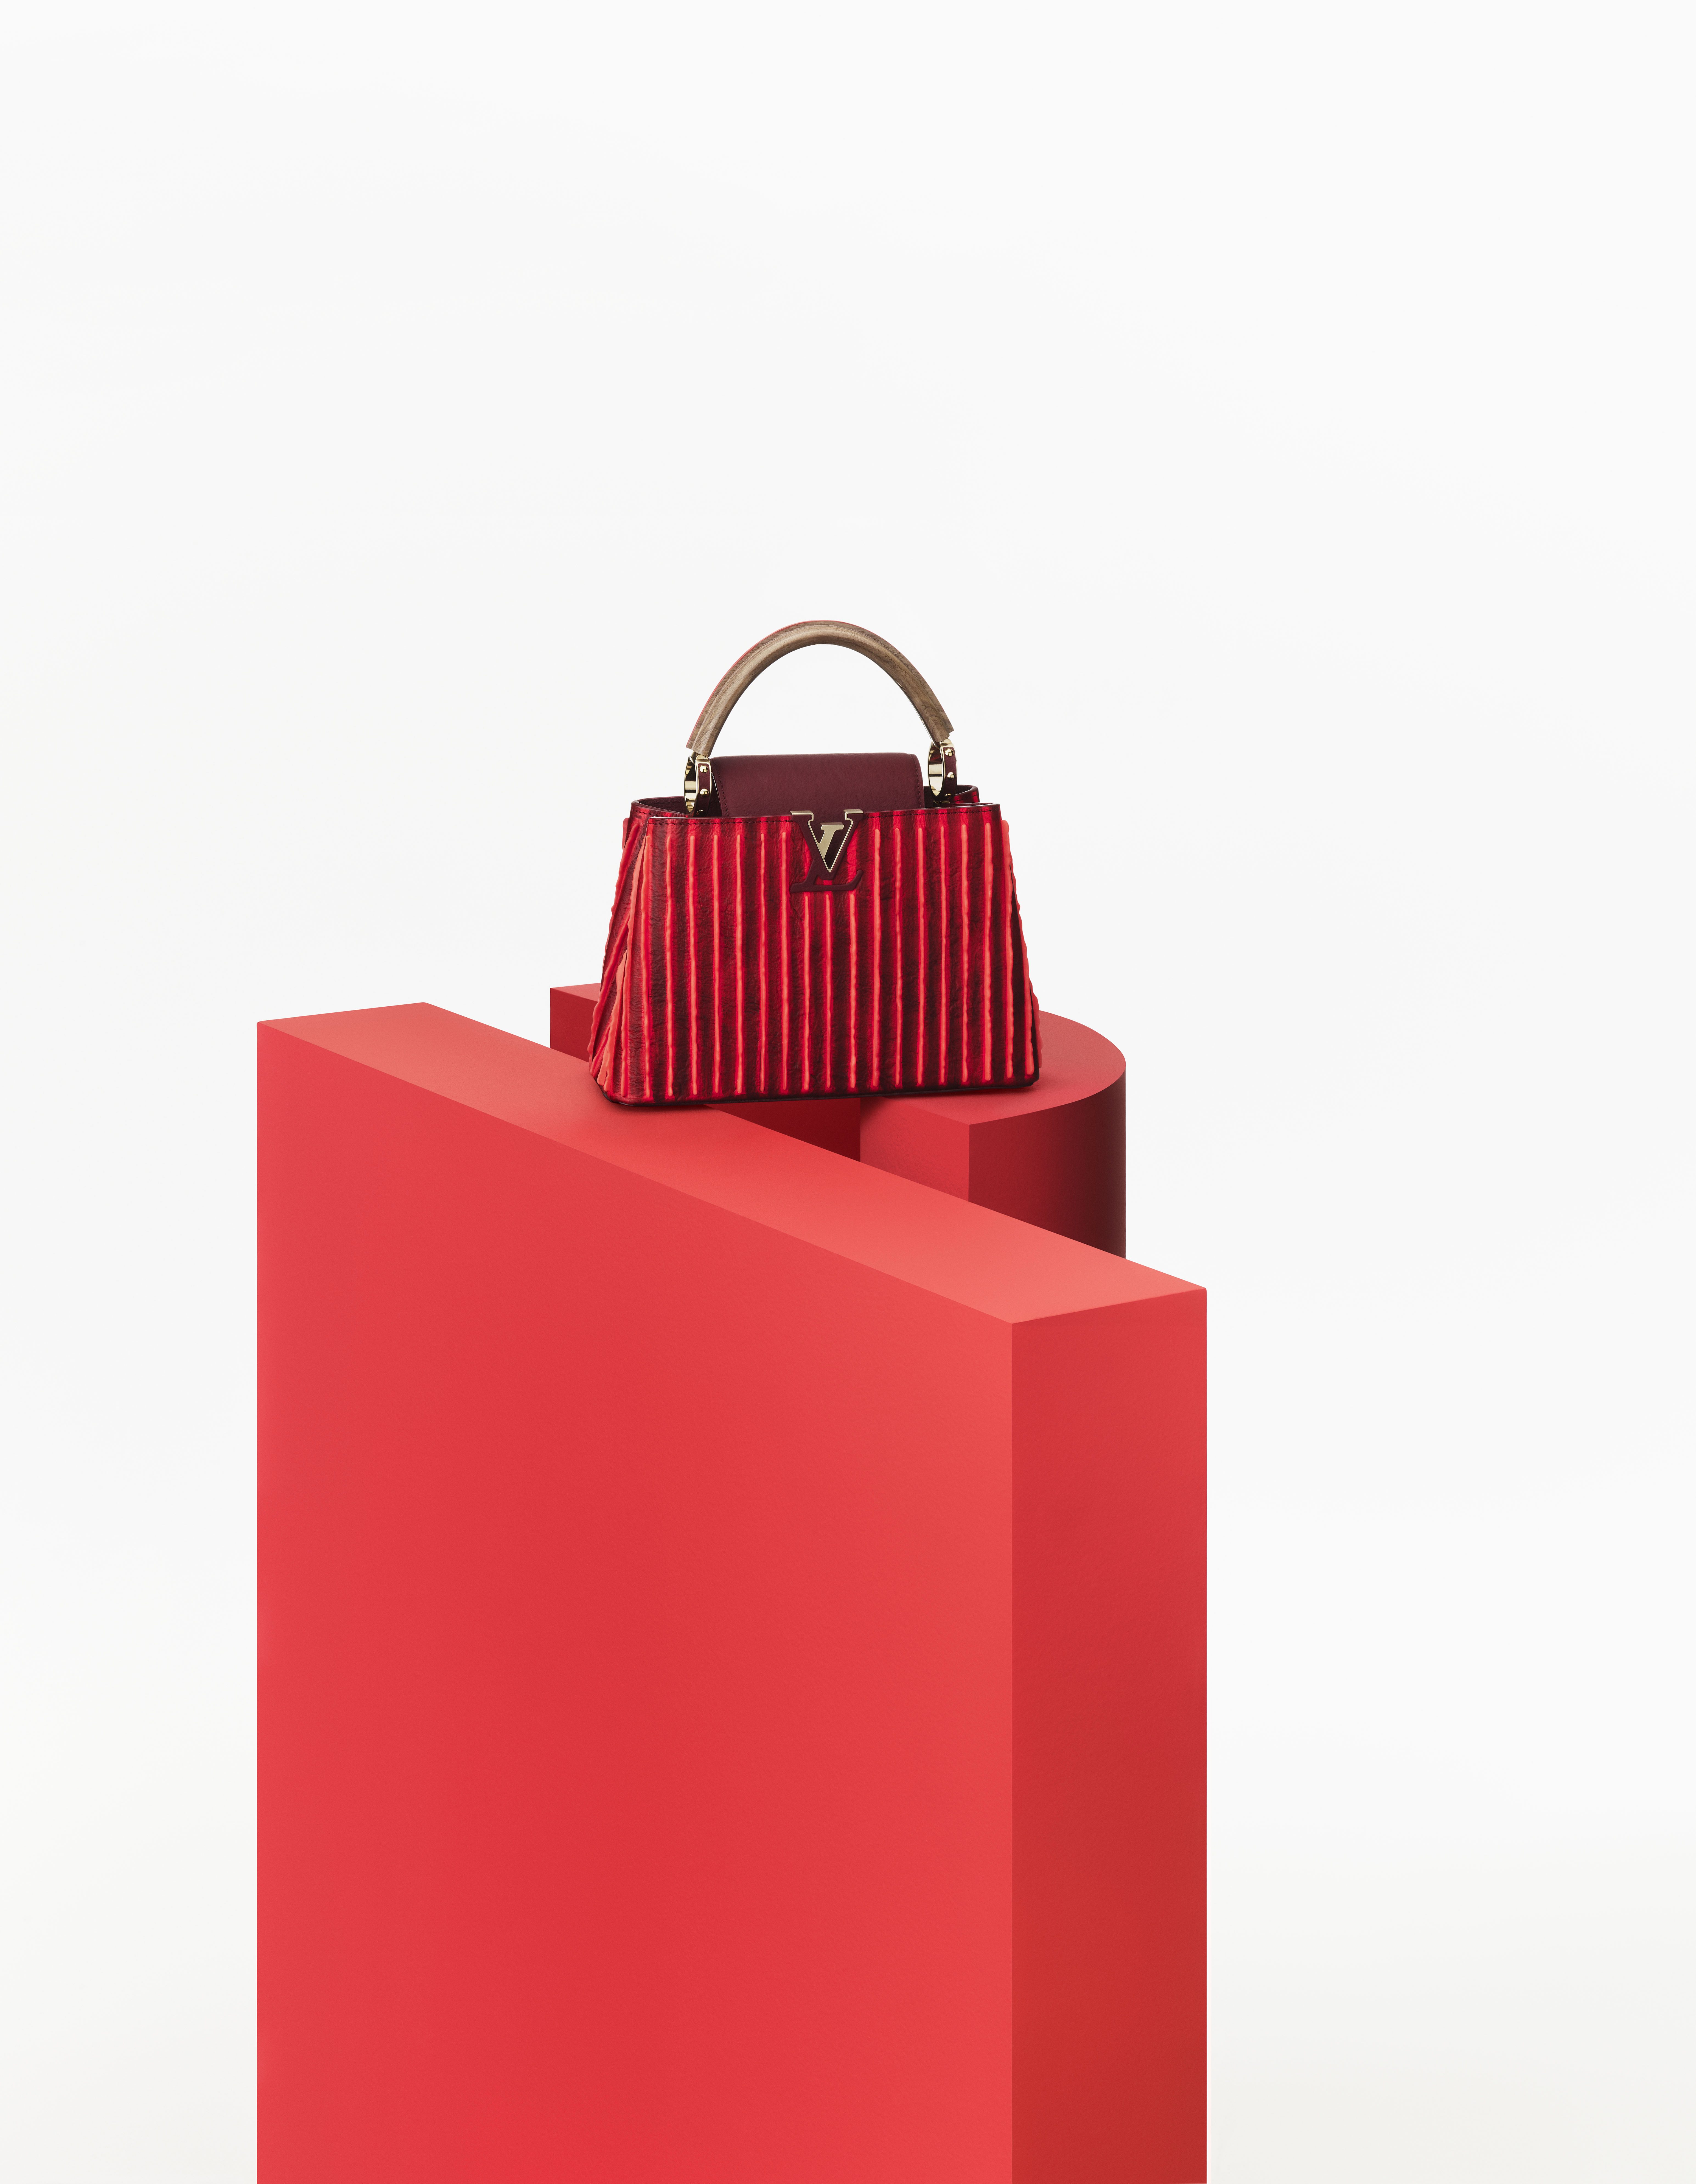 Louis Vuitton Duffel, Custom Art – Watson Kennedy